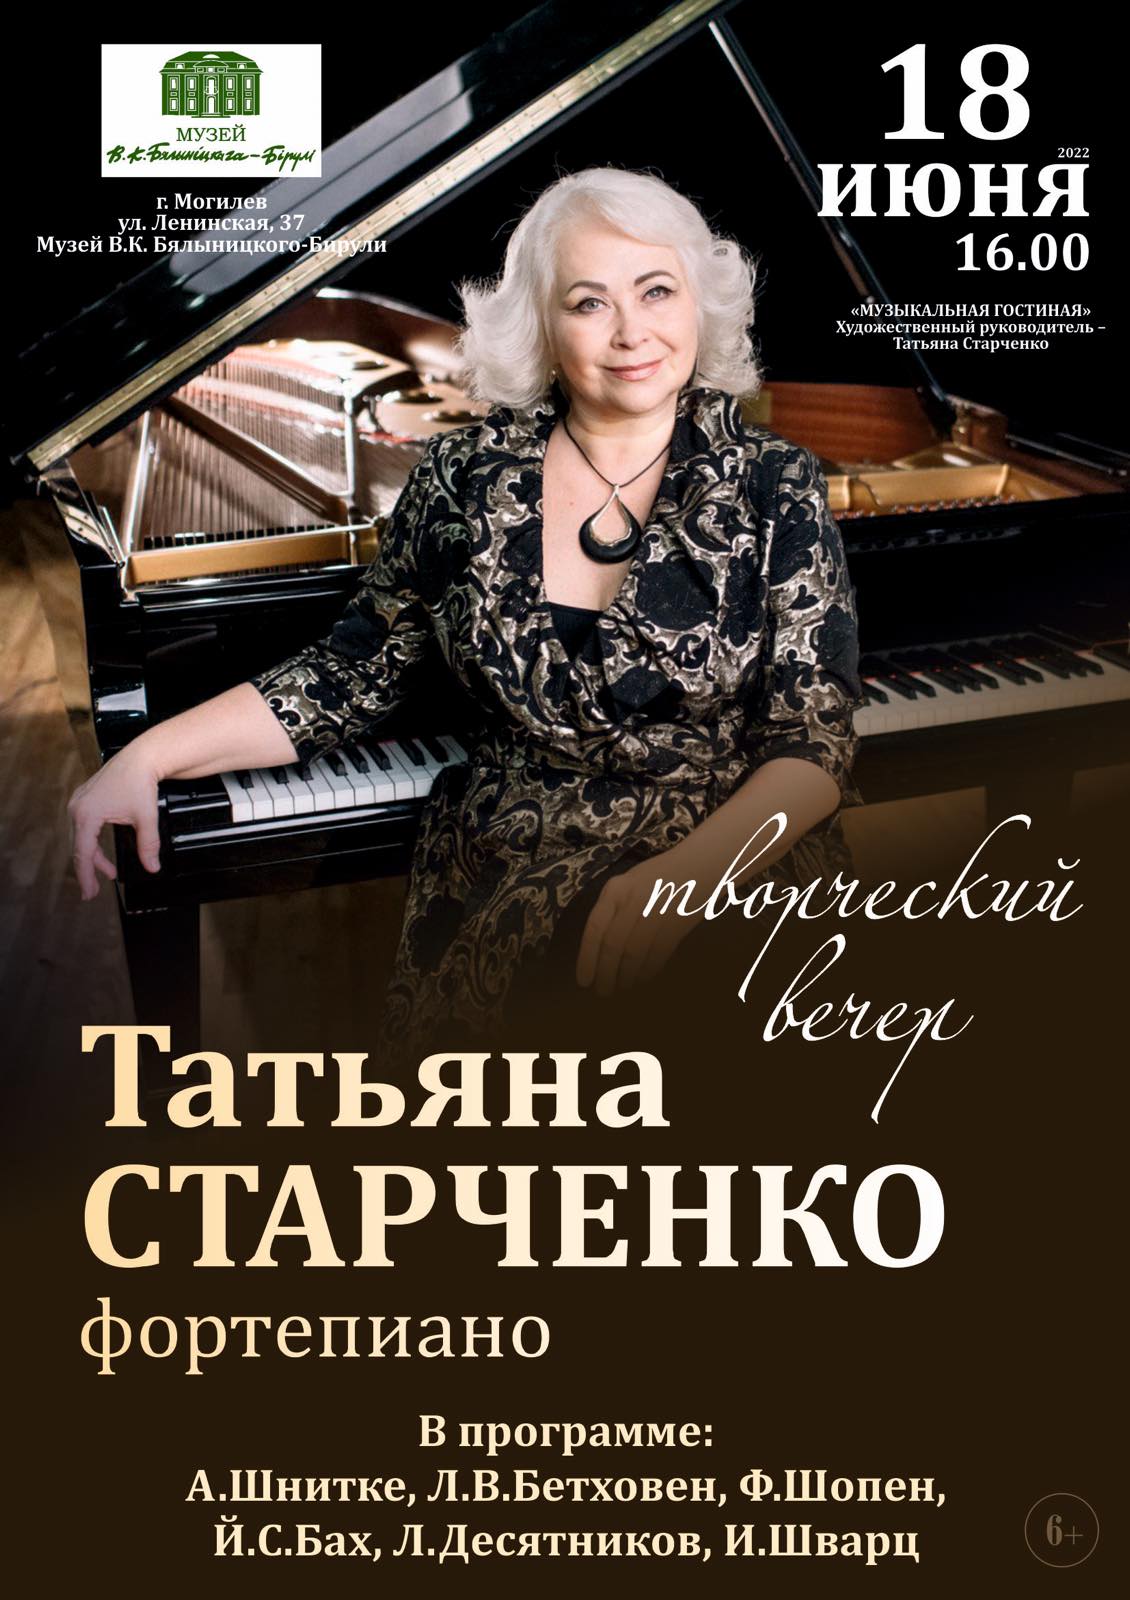 Творческий вечер Татьяны Старченко пройдет в Могилеве 18 июня